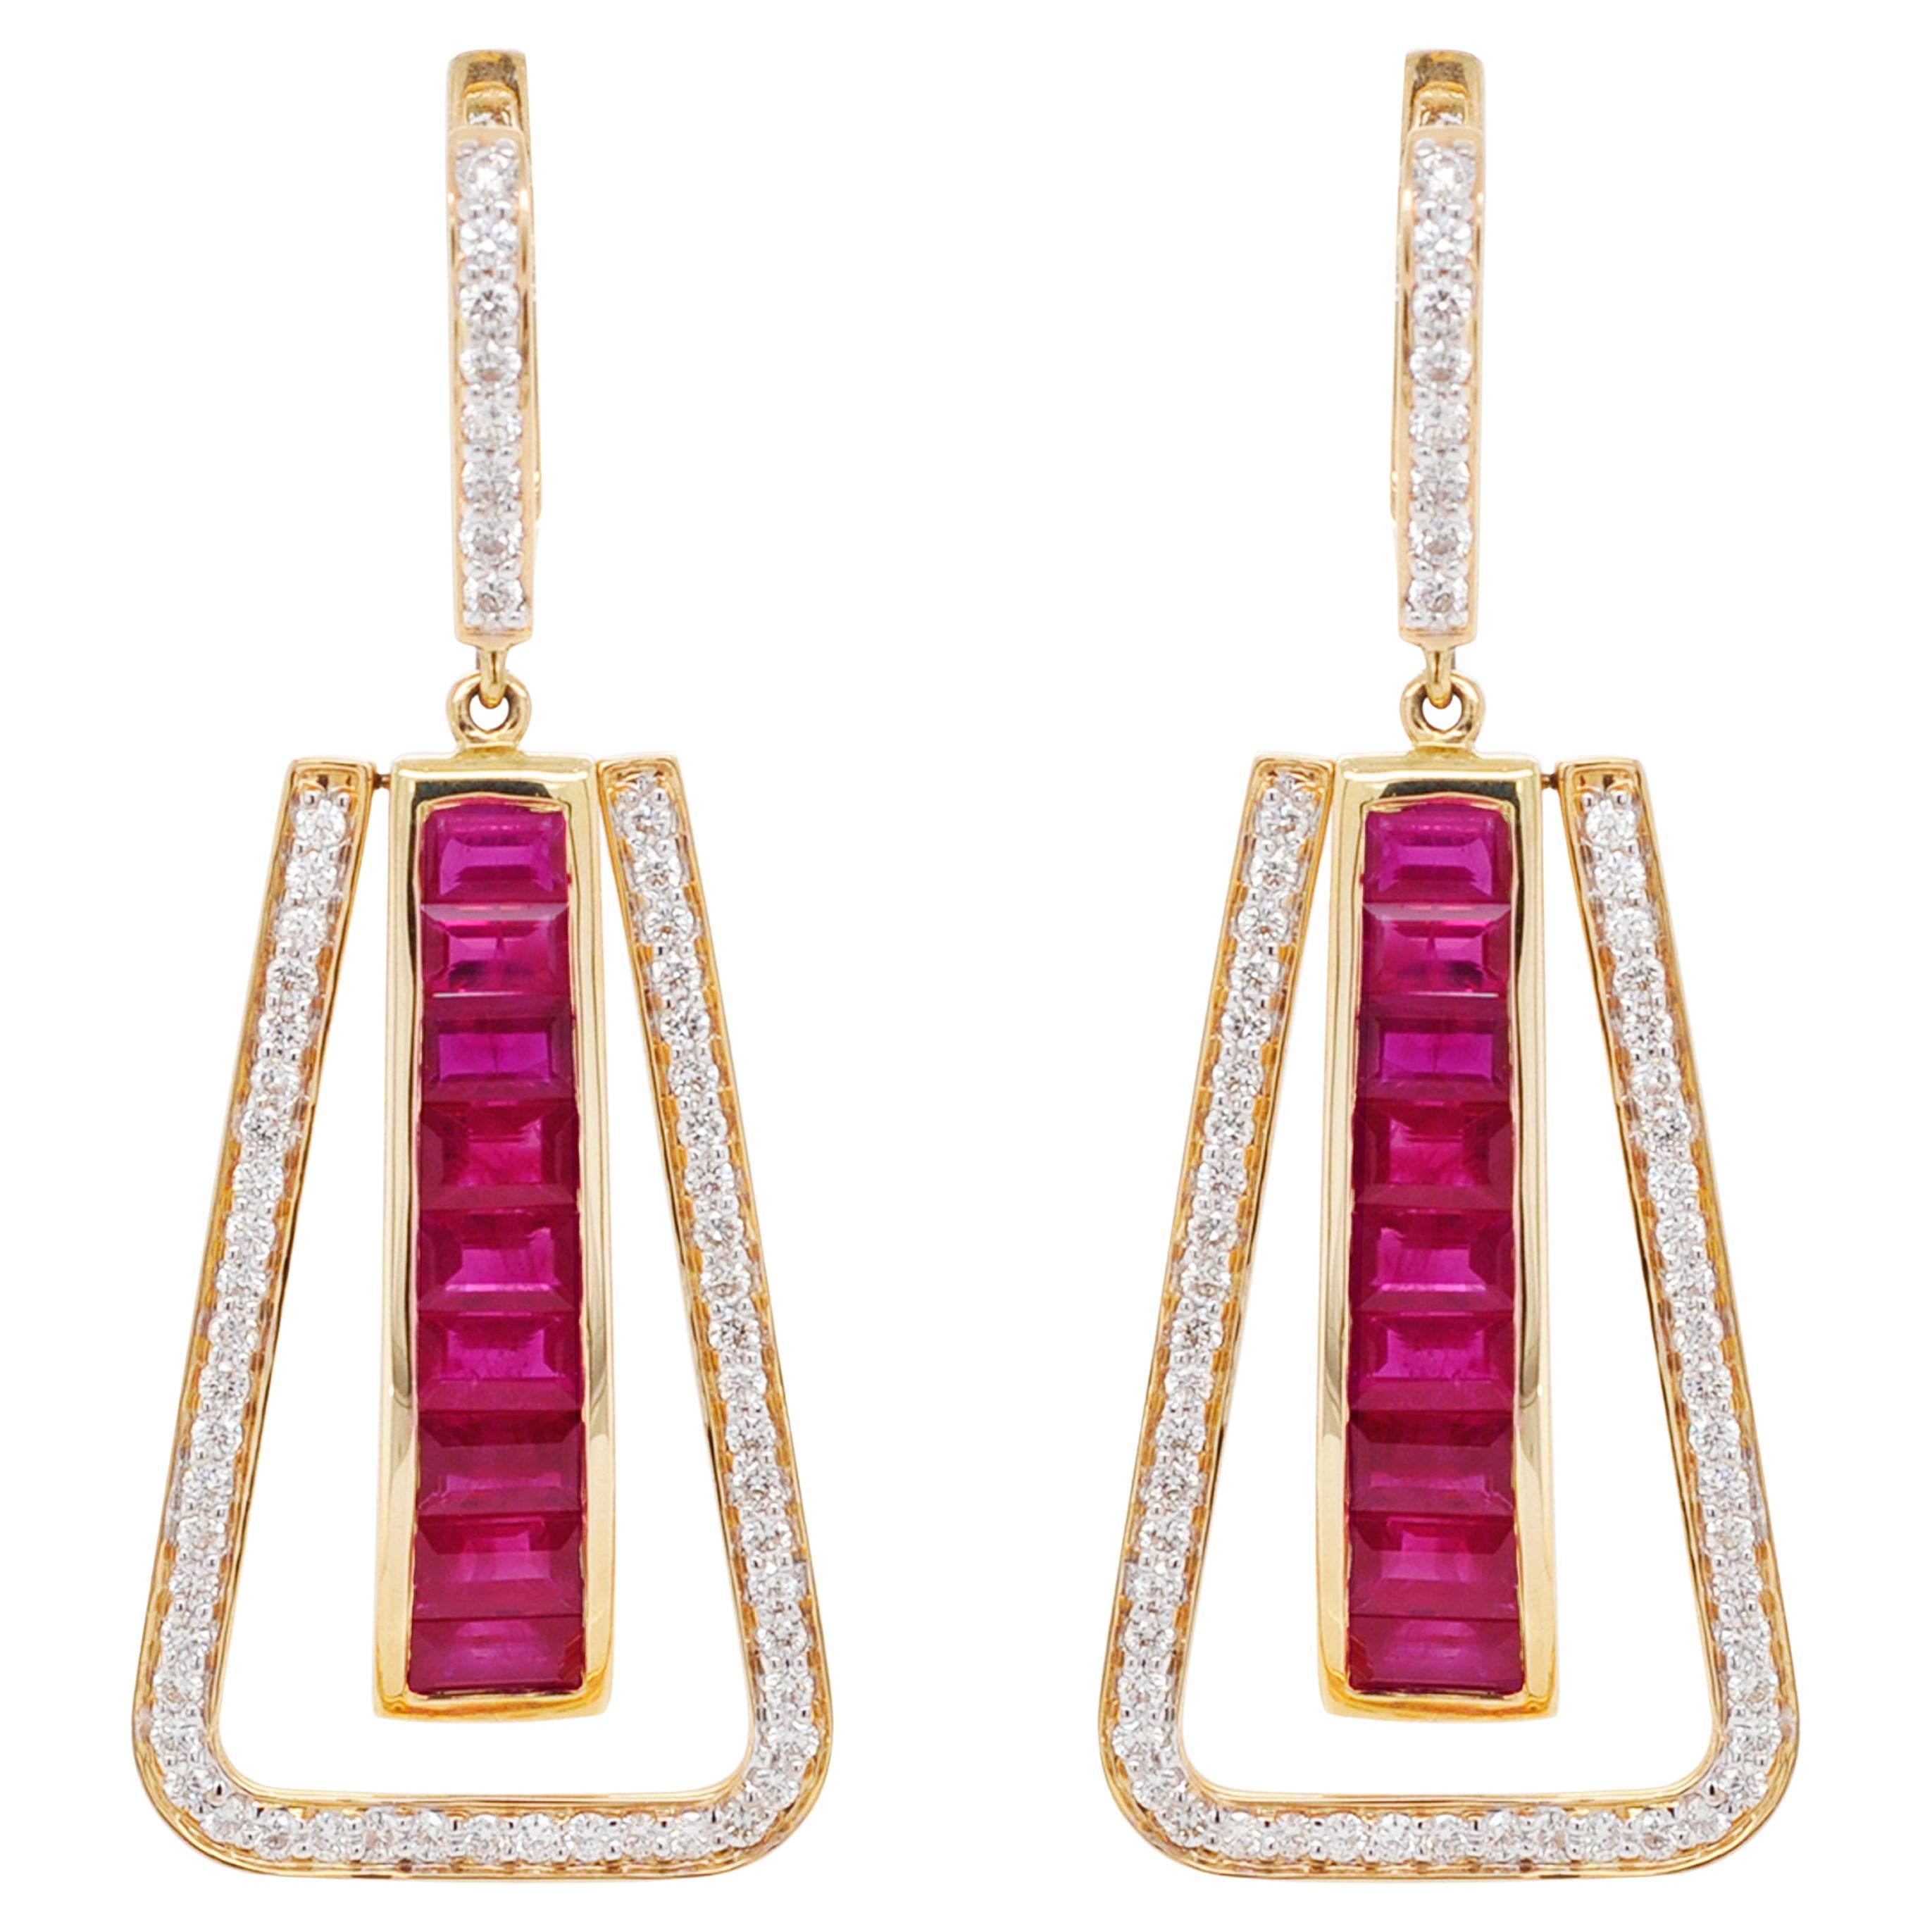 Boucles d'oreilles linéaires de style Art déco en or 18 carats, serties de rubis et de diamants baguettes